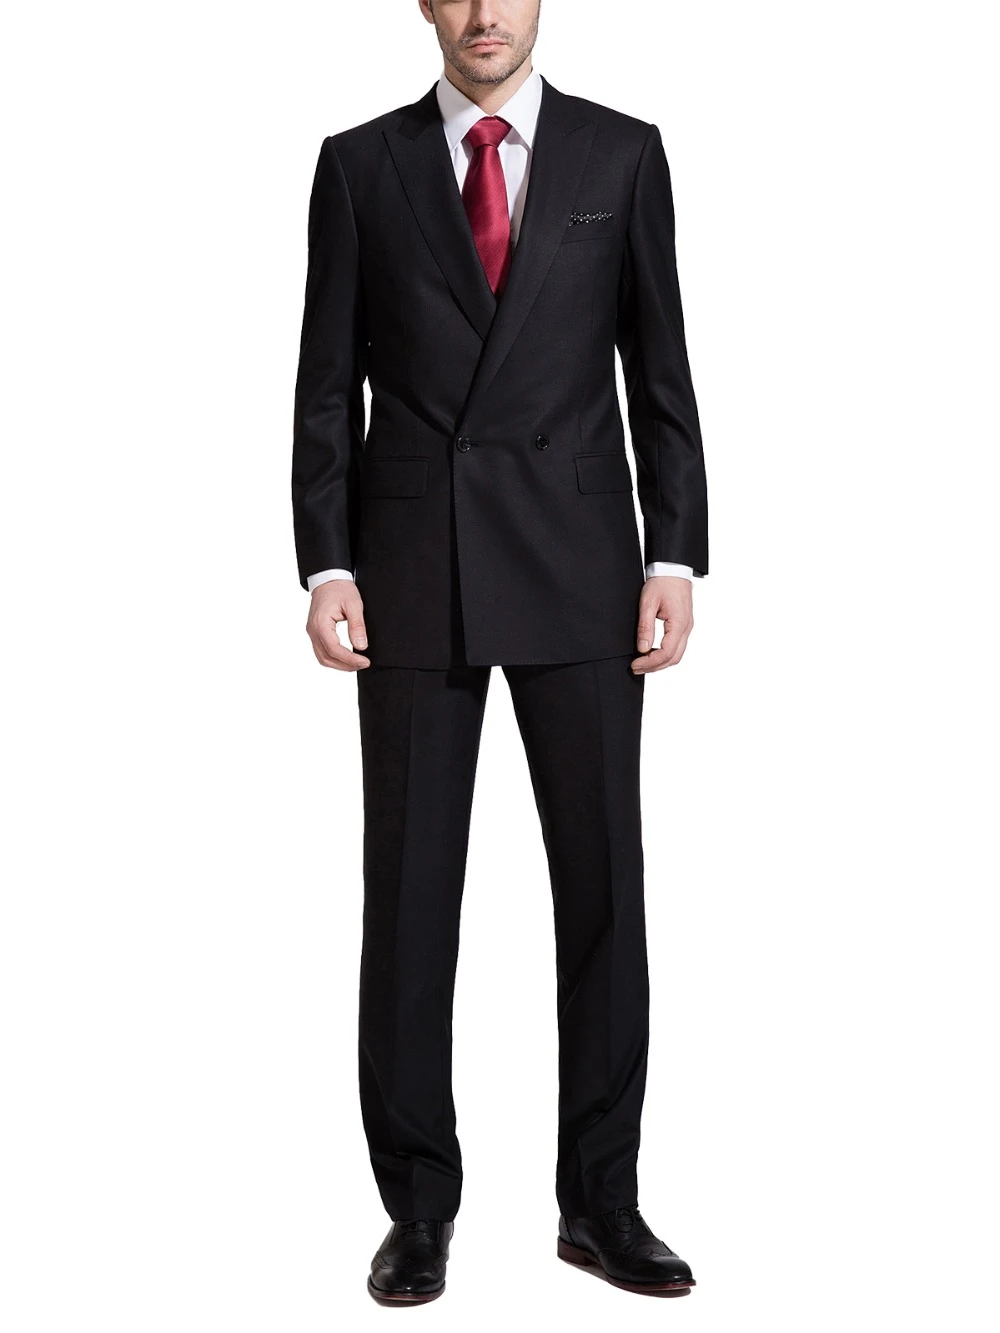 Esmoquin de 2 piezas con 2 botones para hombre, traje Formal negro para  evento de negocios, con diseño elegante|Trajes| - AliExpress